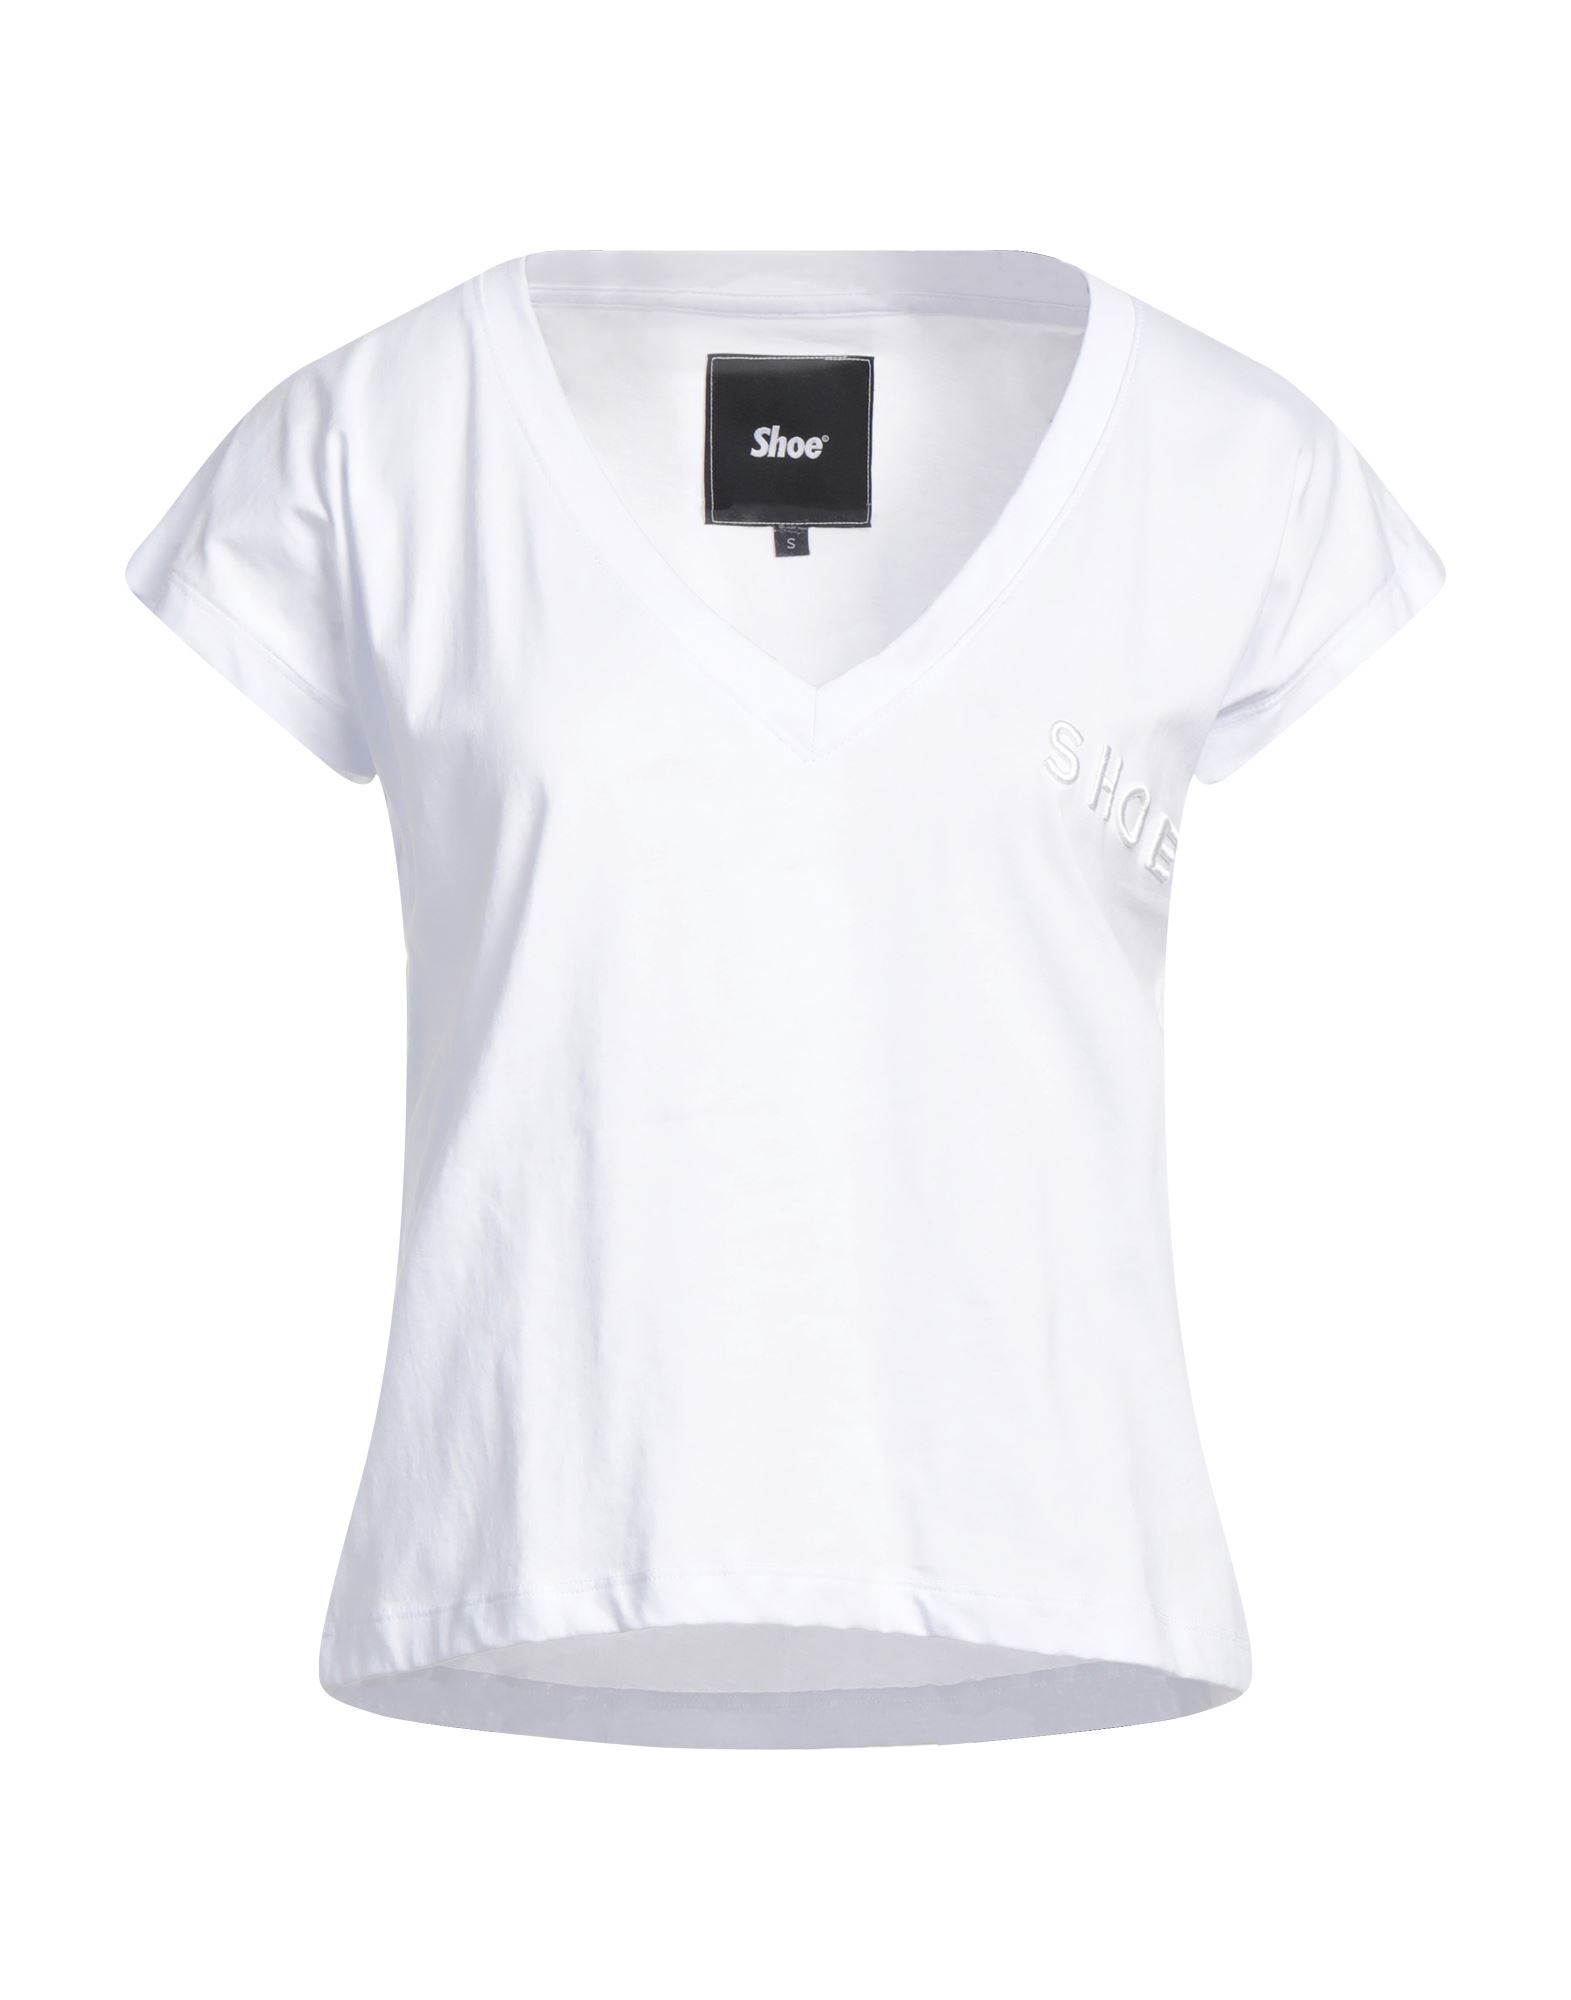 Shoe® Shoe Woman T-shirt White Size Xs Cotton